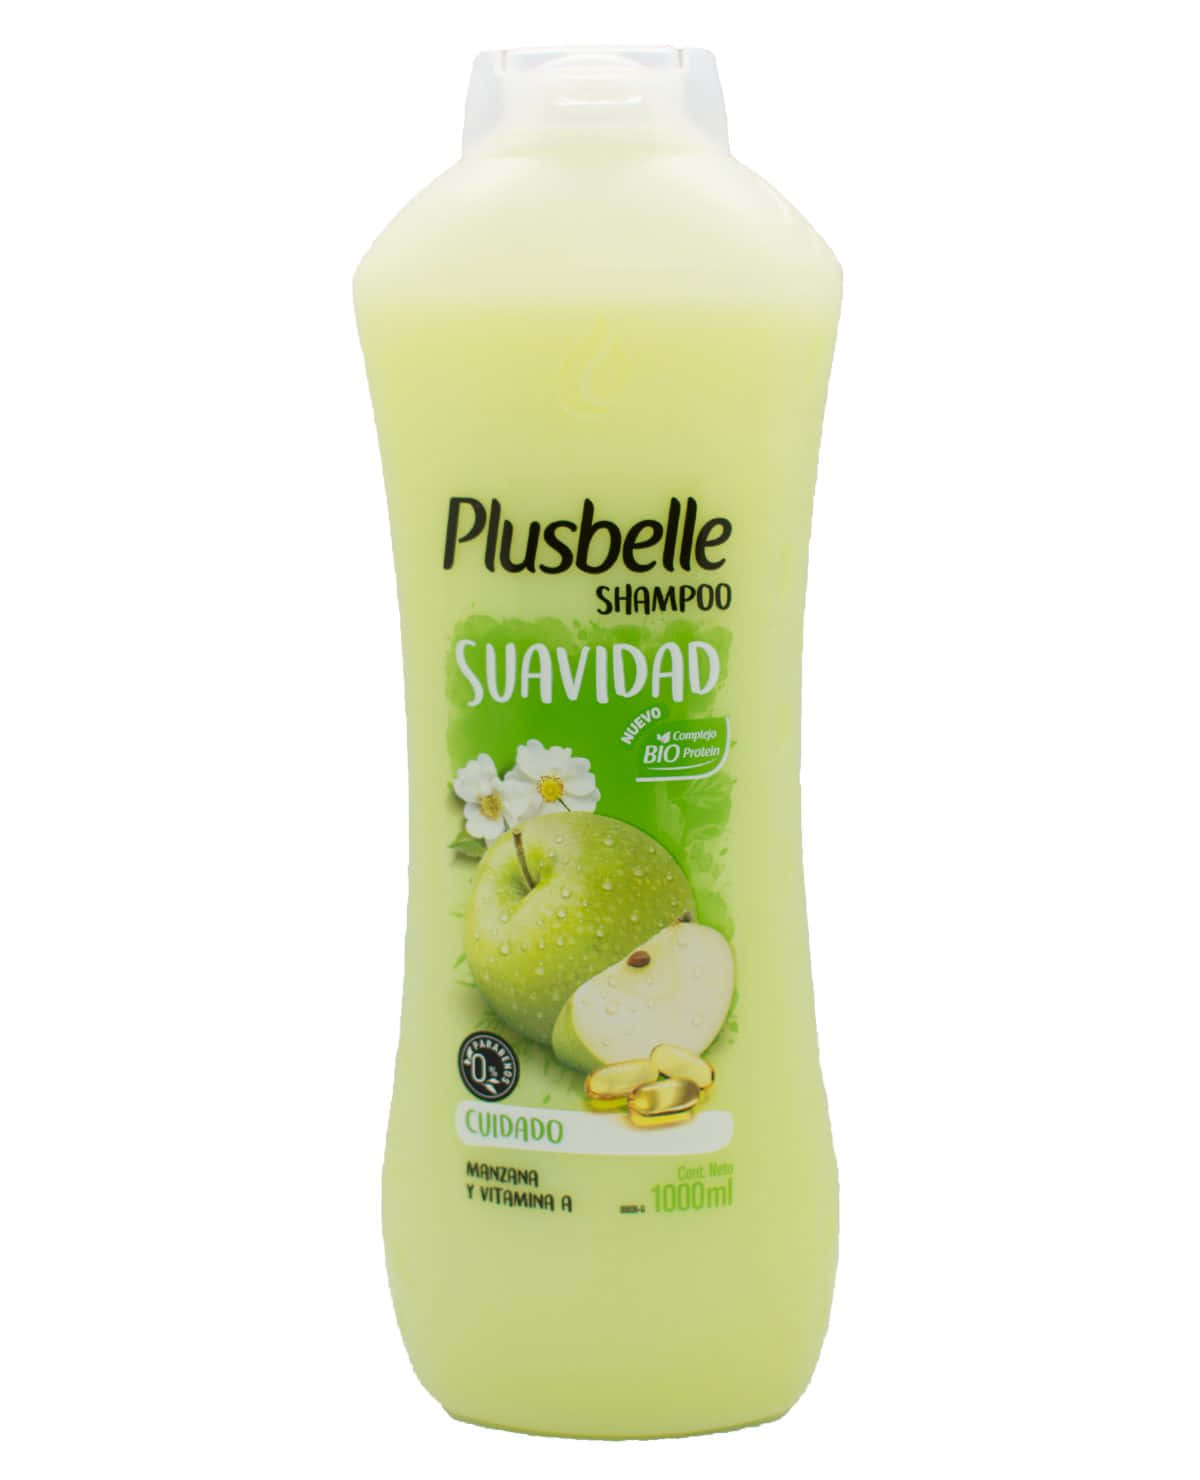 Shampoo Plusbelle Suavidad 1 Lt